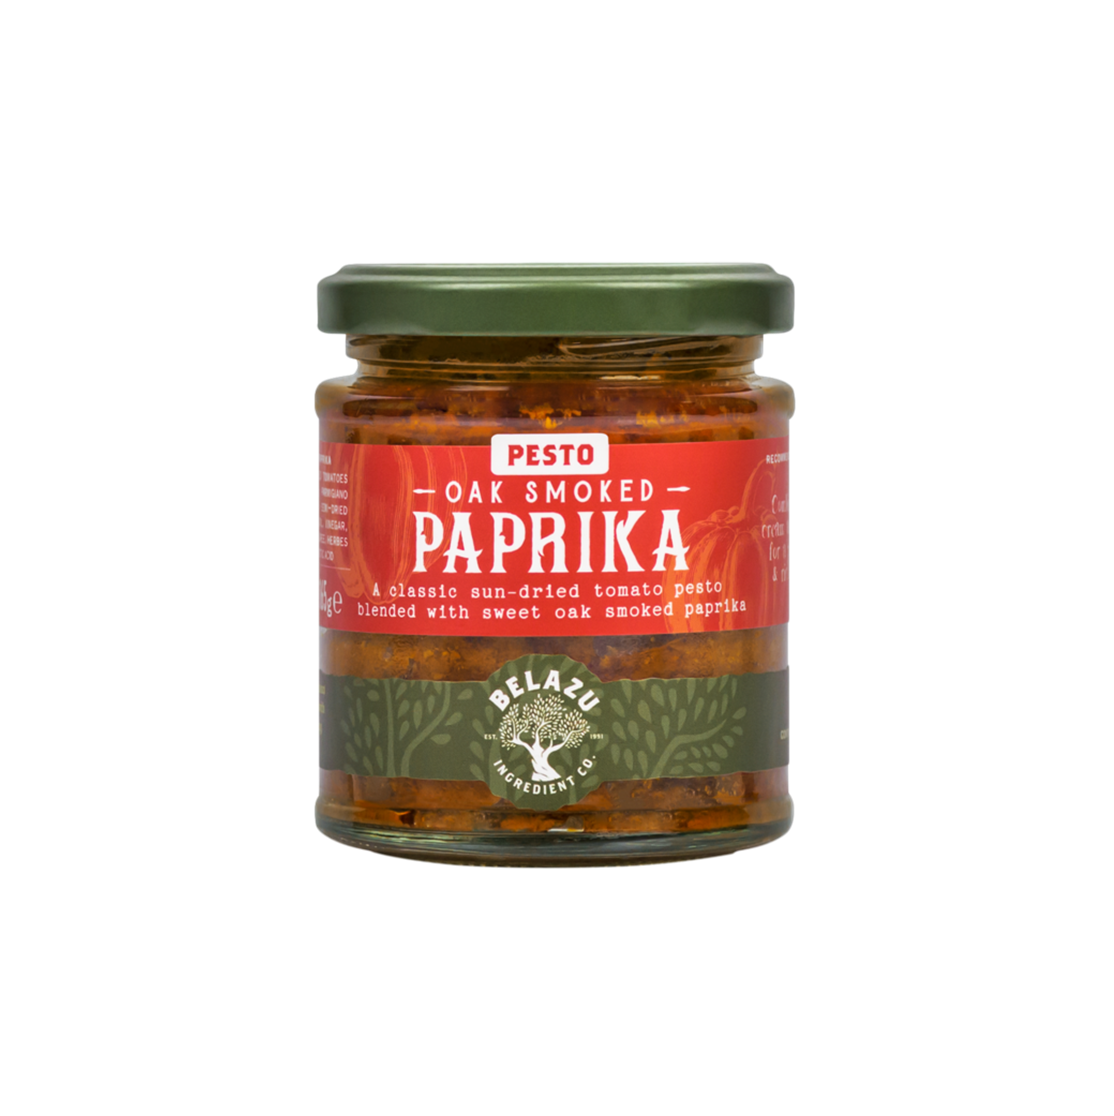 Snel opvolger Glimp Oak smoked Paprika pesto 165g - Mercato Italiano